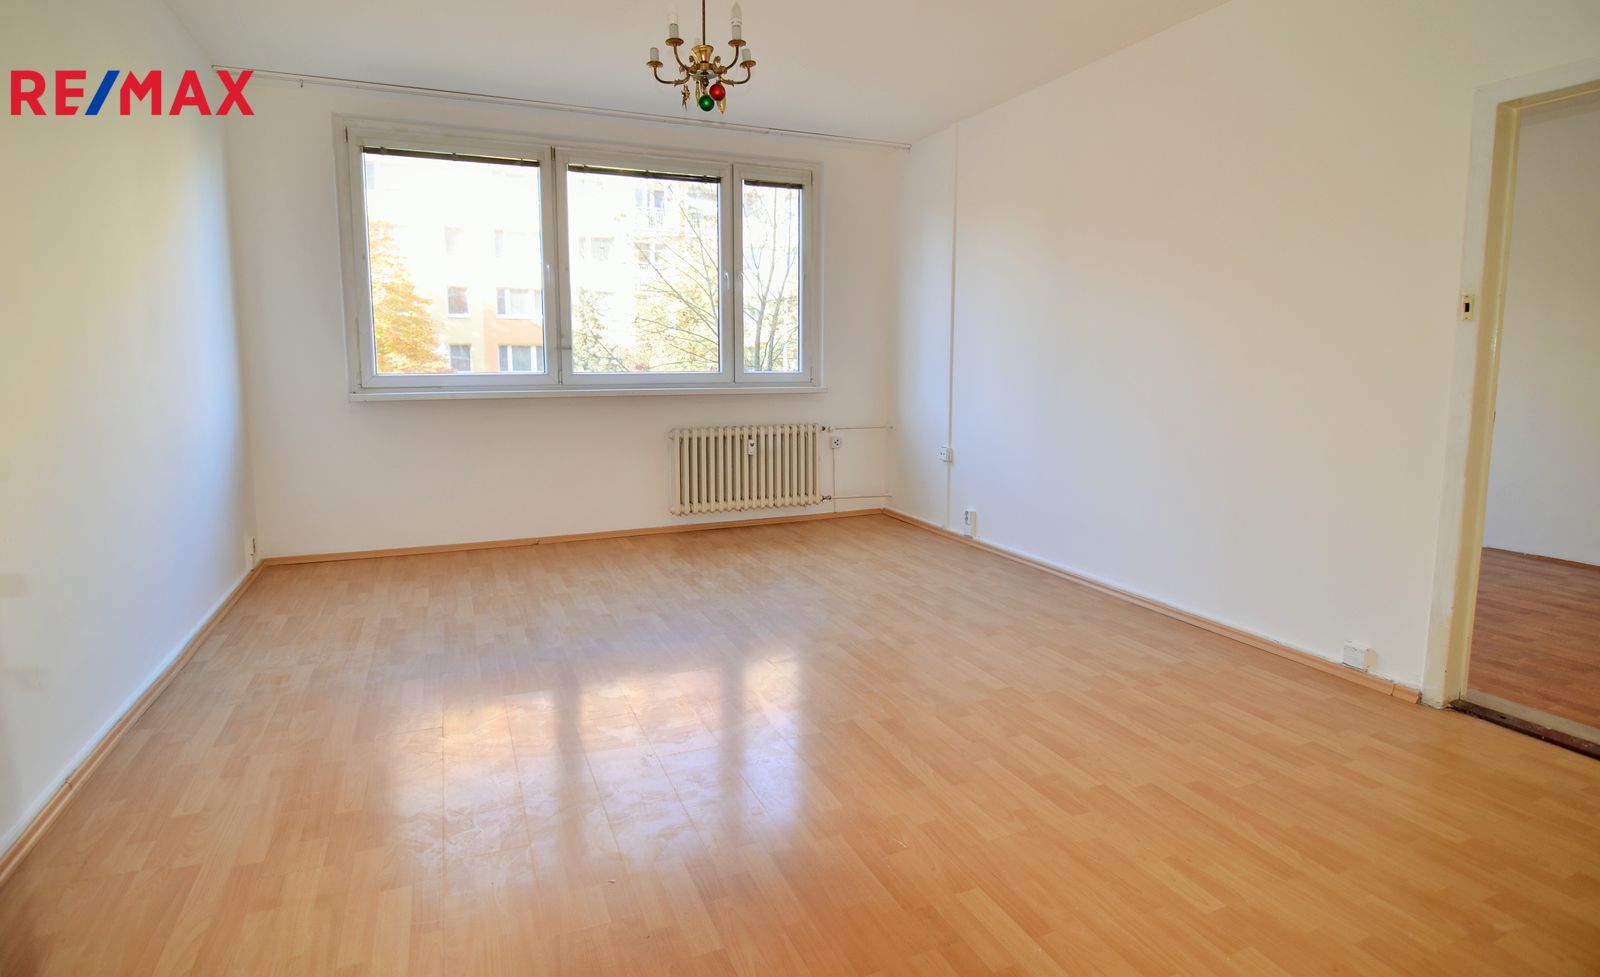 Prodej bytu 5+kk v osobním vlastnictví, 91 m2, Praha 5 - Hlubočepy